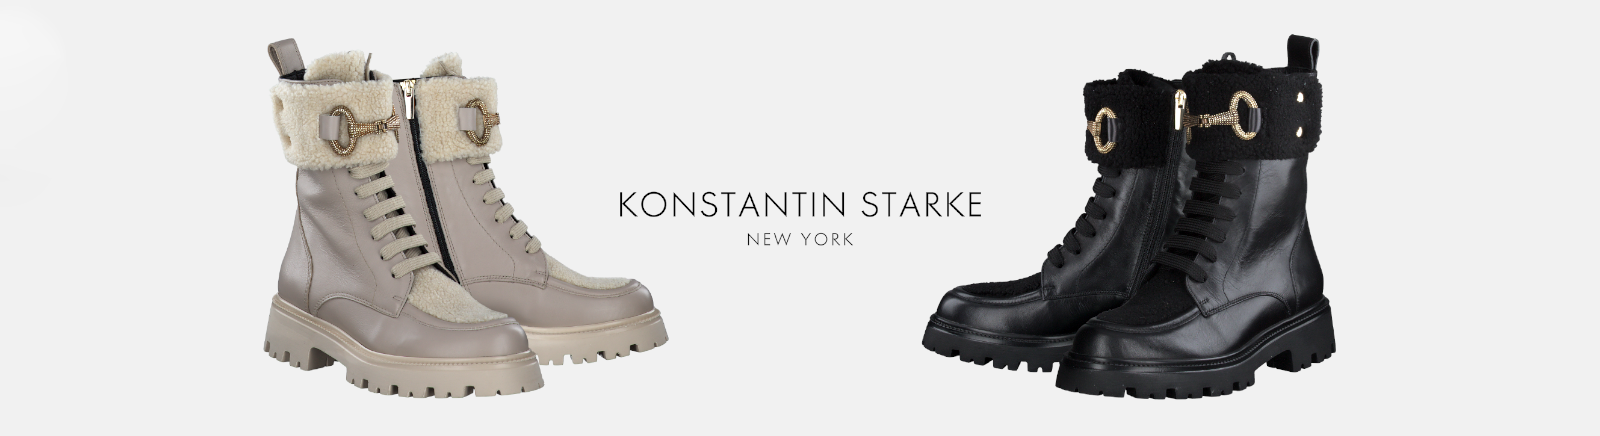 Konstantin Starke Winter Boots für Damen im Online-Shop von GISY kaufen